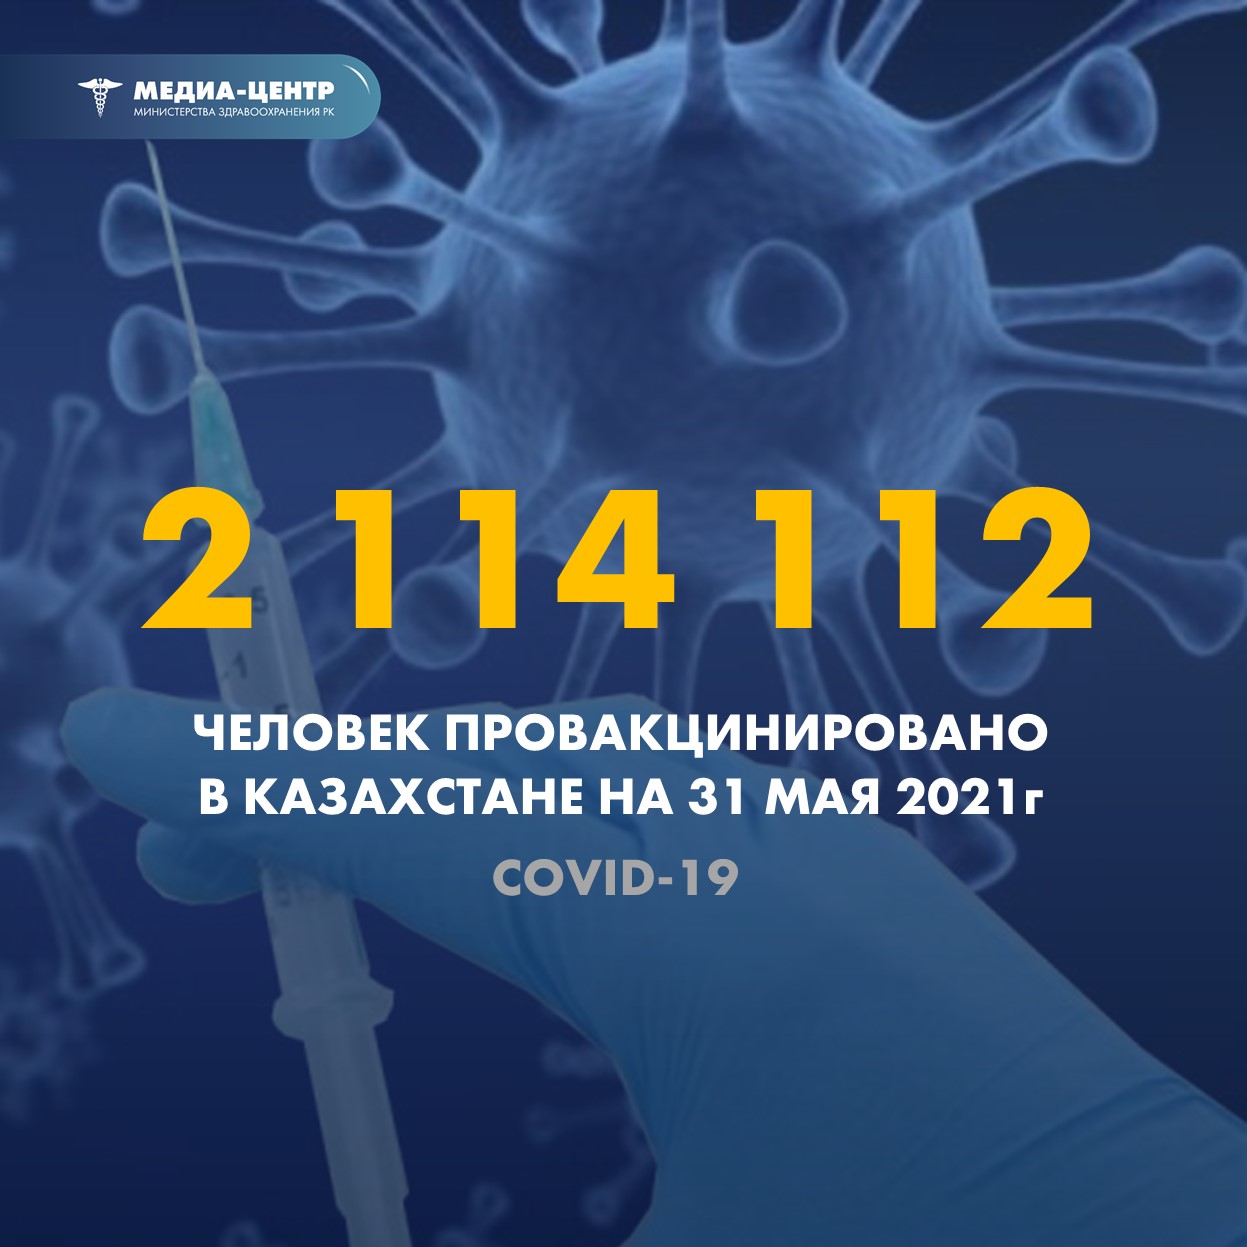 2 114 112 человек провакцинировано в Казахстане на 31 мая 2021 г